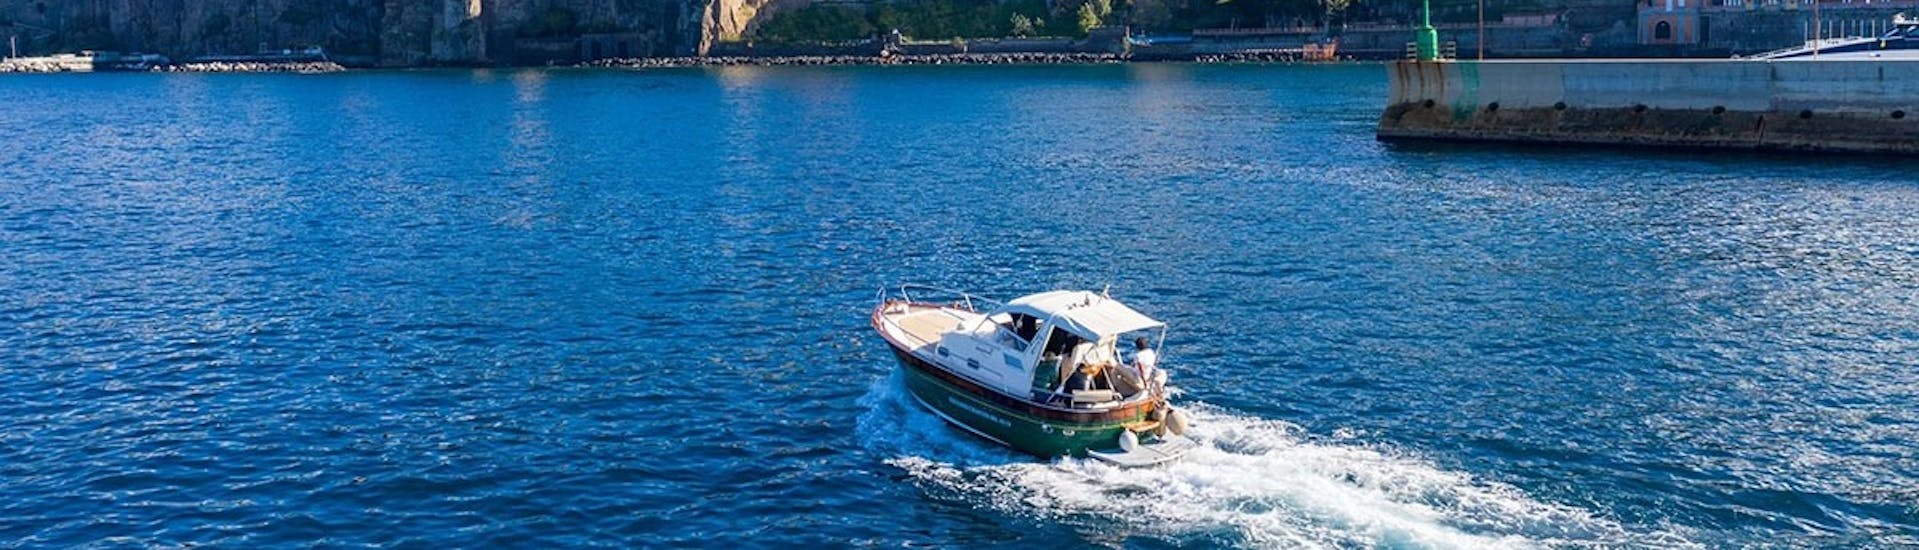 Le bateau de Giuliani Charter Sorrento en pleine mer pendant la Balade en bateau autour de Sorrente avec Dégustation de limoncello.